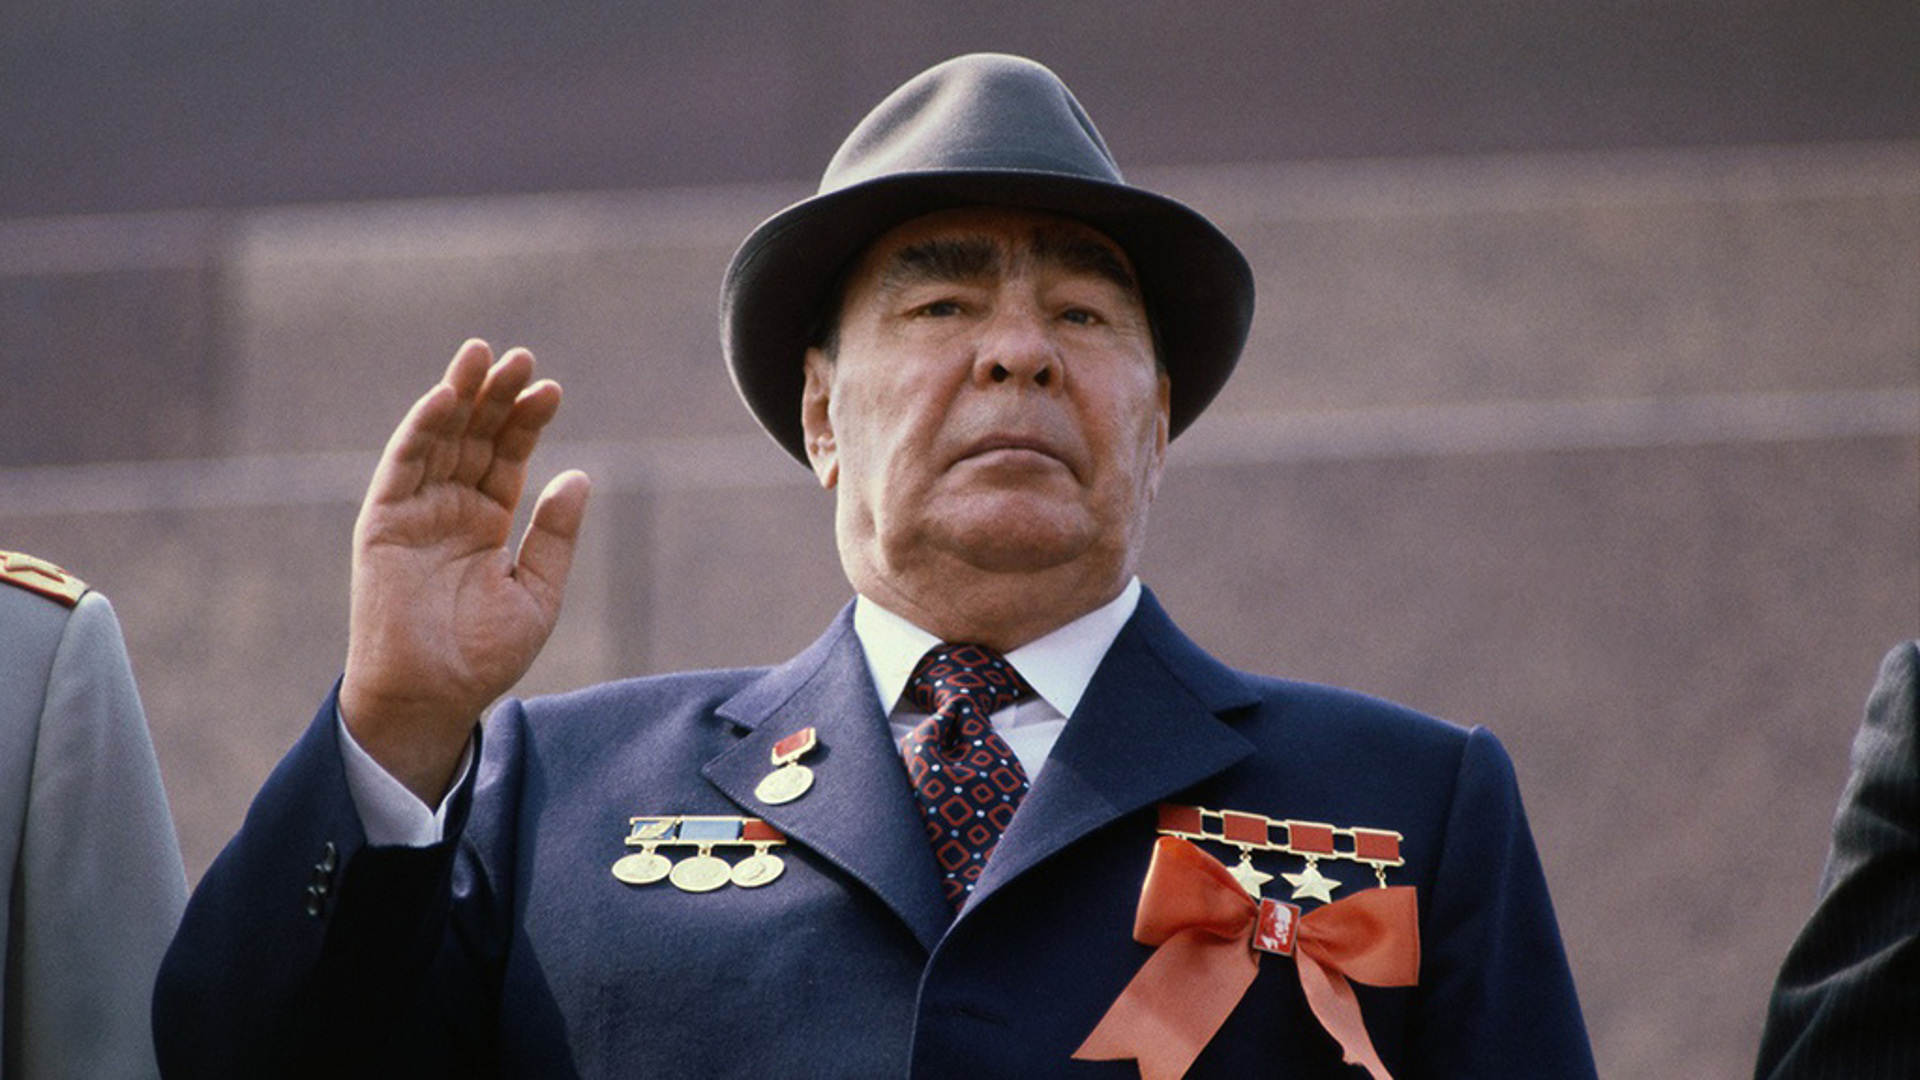 Брежнев председатель совета. Брежнев 1964.